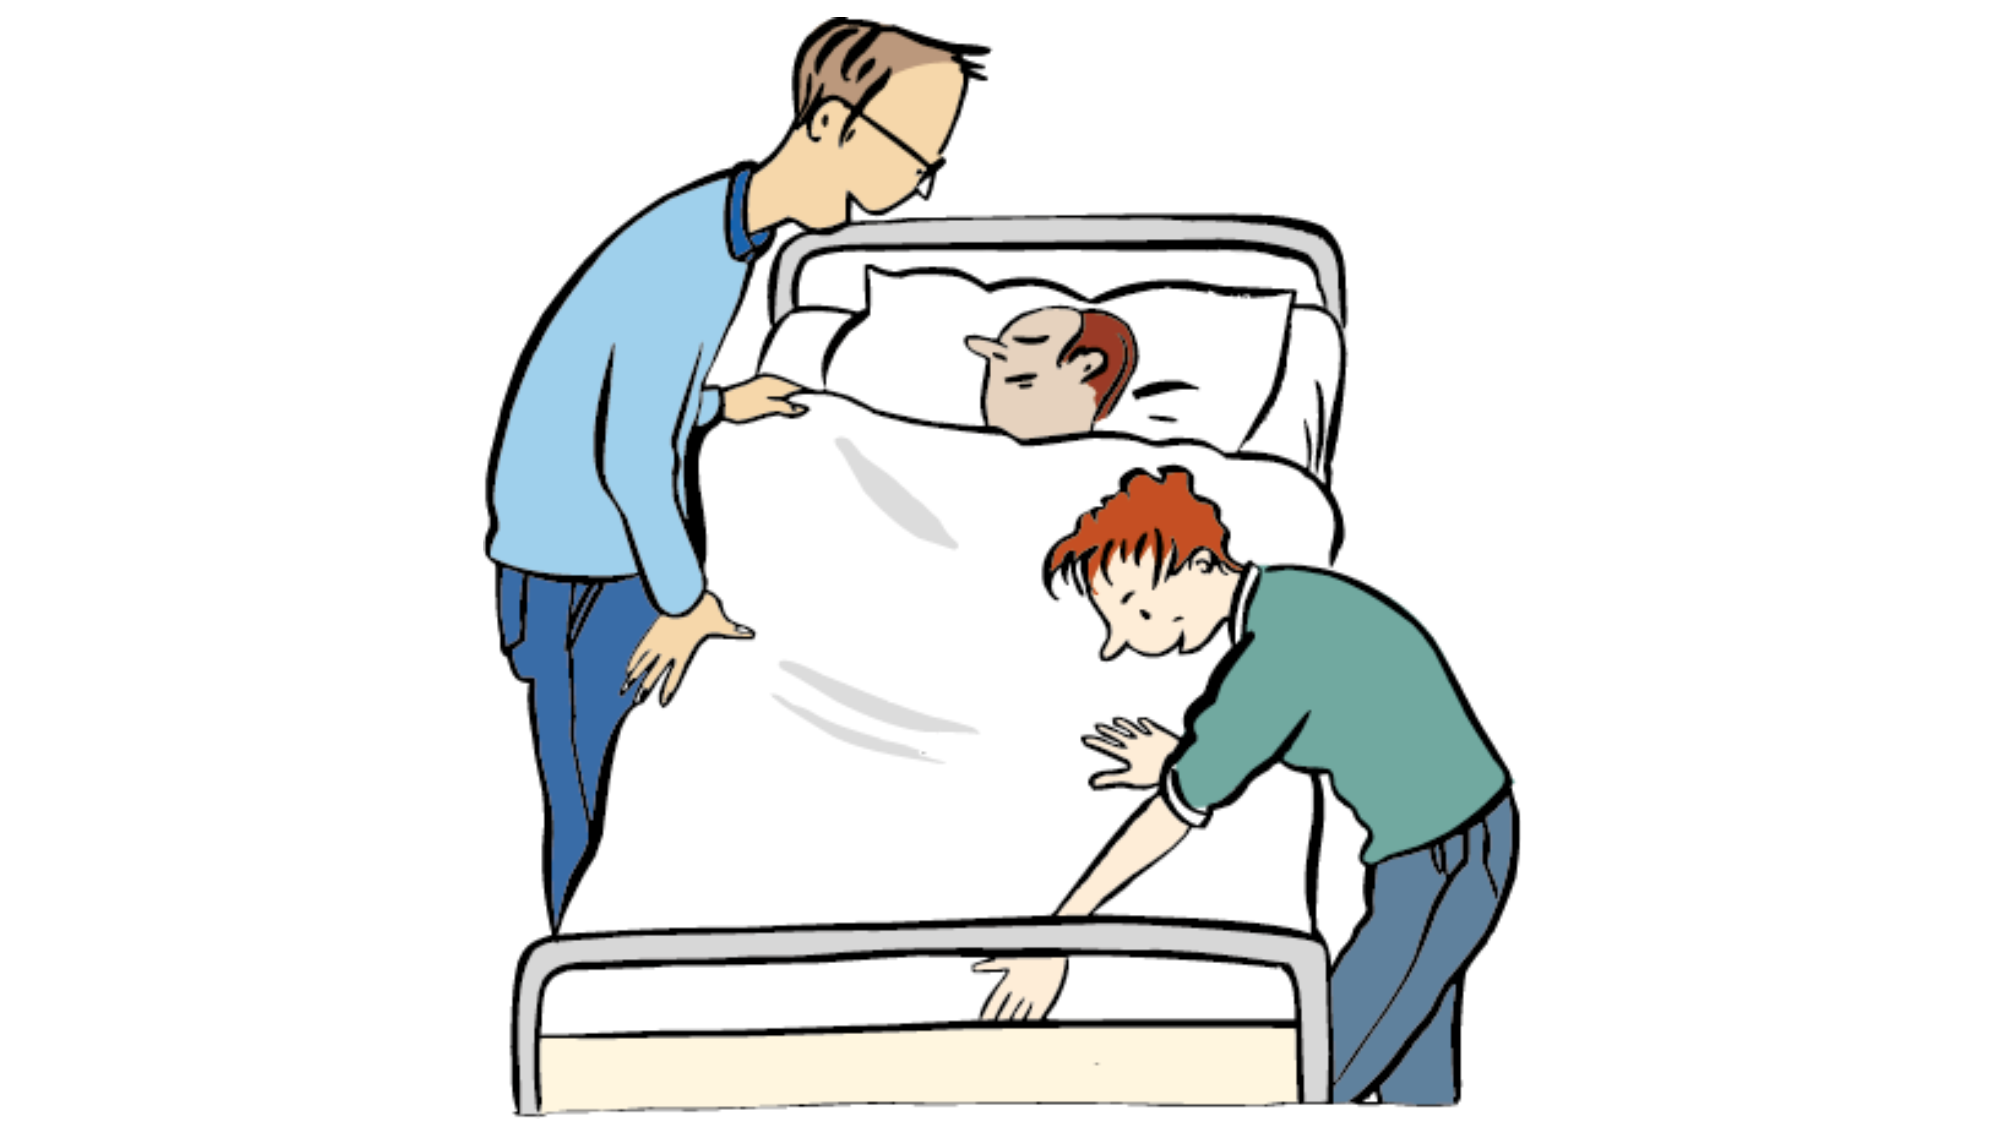 Grafik: Zwei Personen kümmern sich um eine im Bett liegende Person.